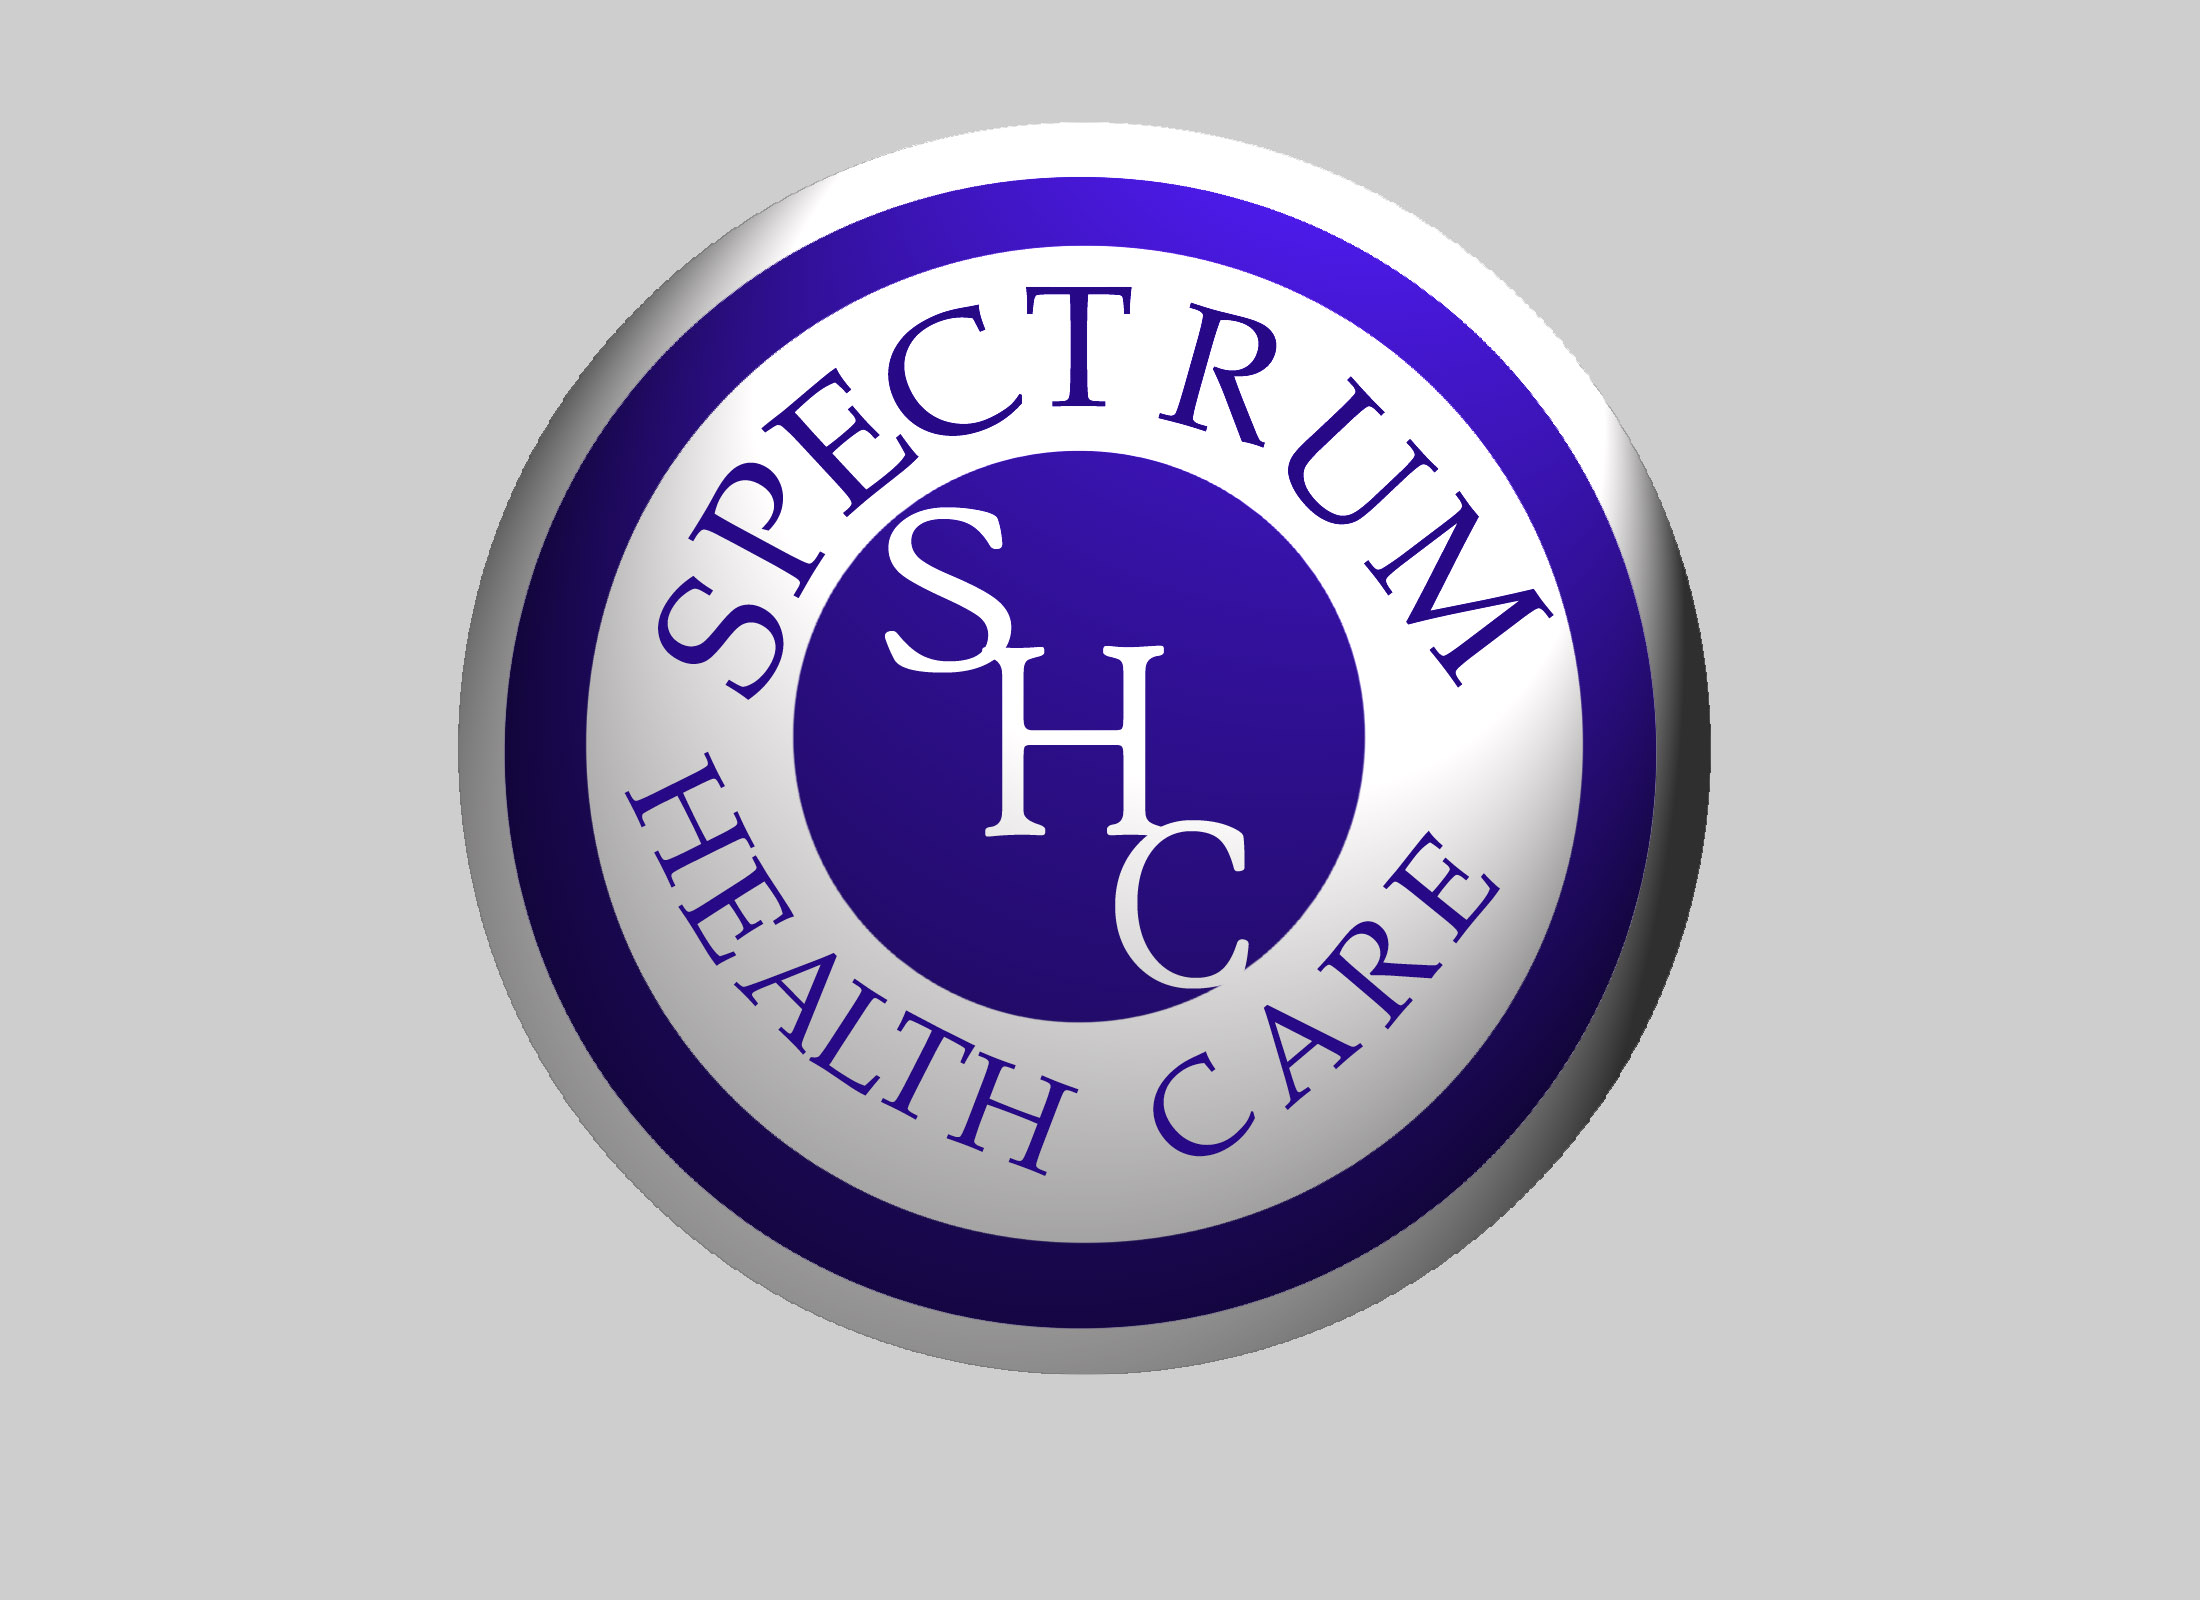 Spectrum Health Care, Inc. 